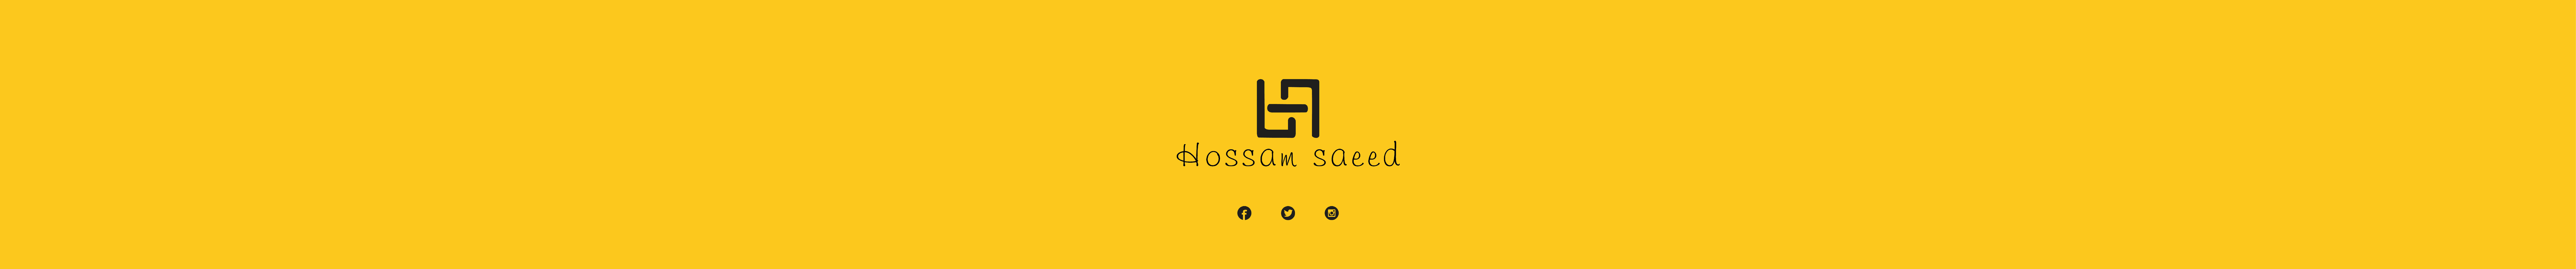 Banner del profilo di Hossam saeed